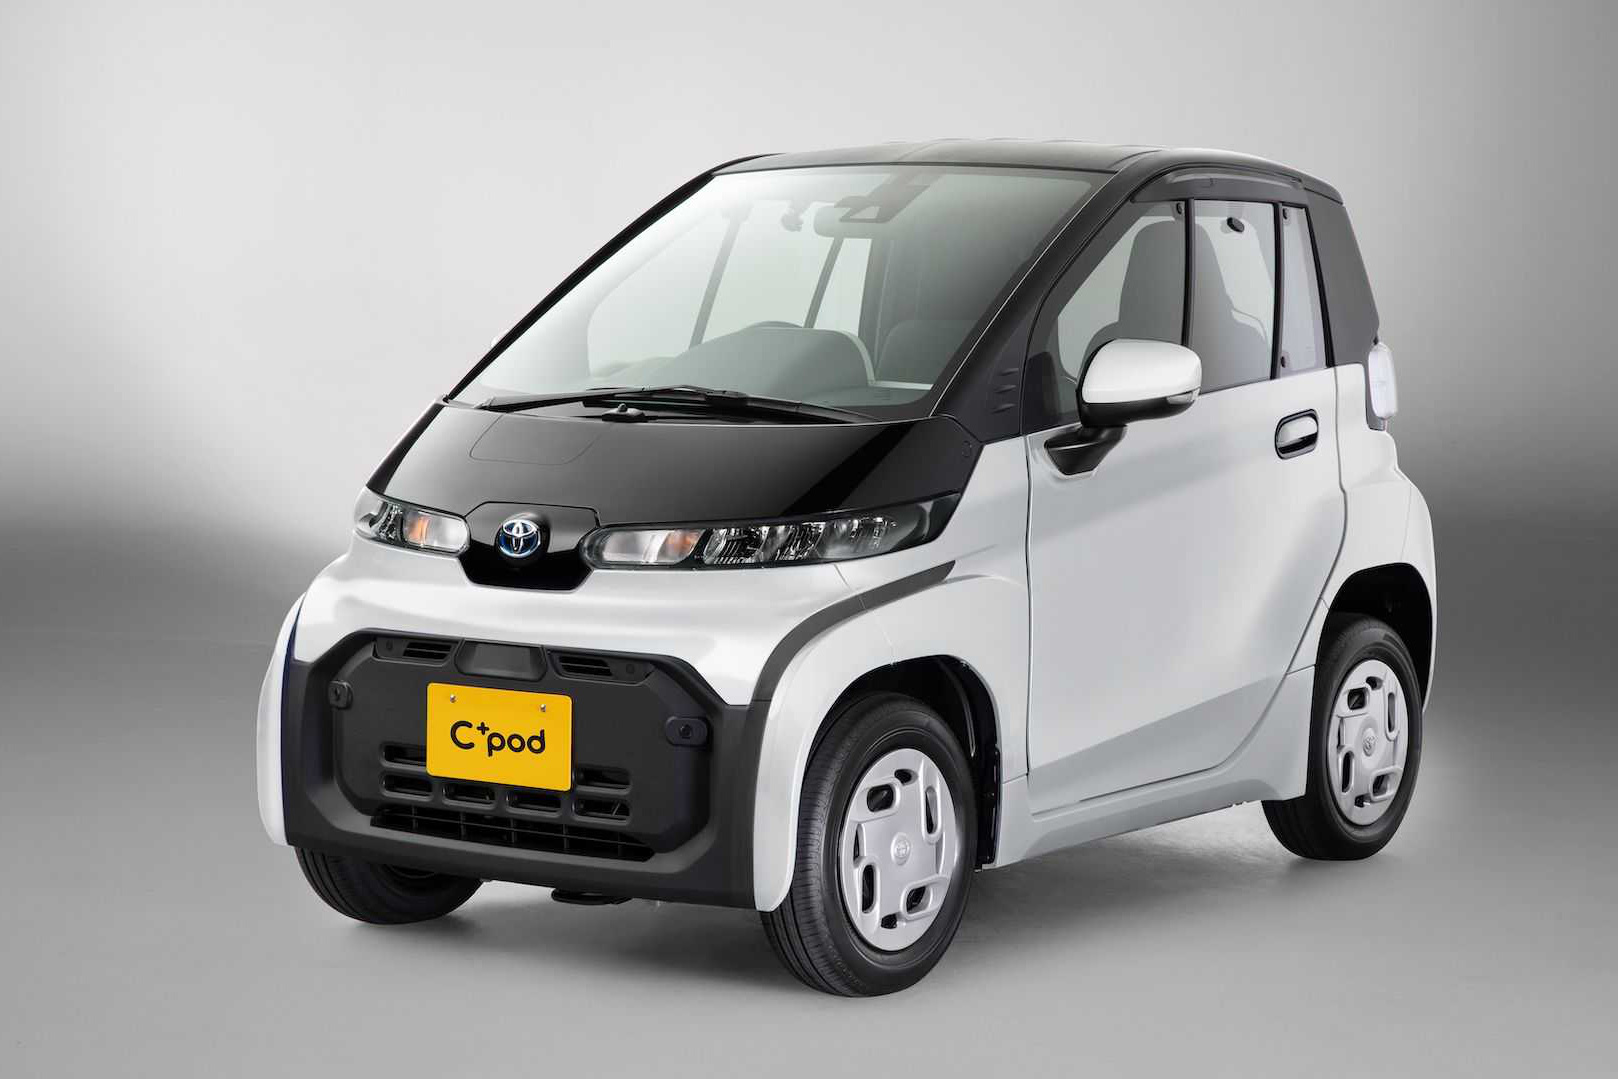 Ra mắt Toyota C*Pod - Ô tô 2 chỗ cho mẹ chở con đi học hoặc đi chợ, giá quy đổi 370 triệu đồng